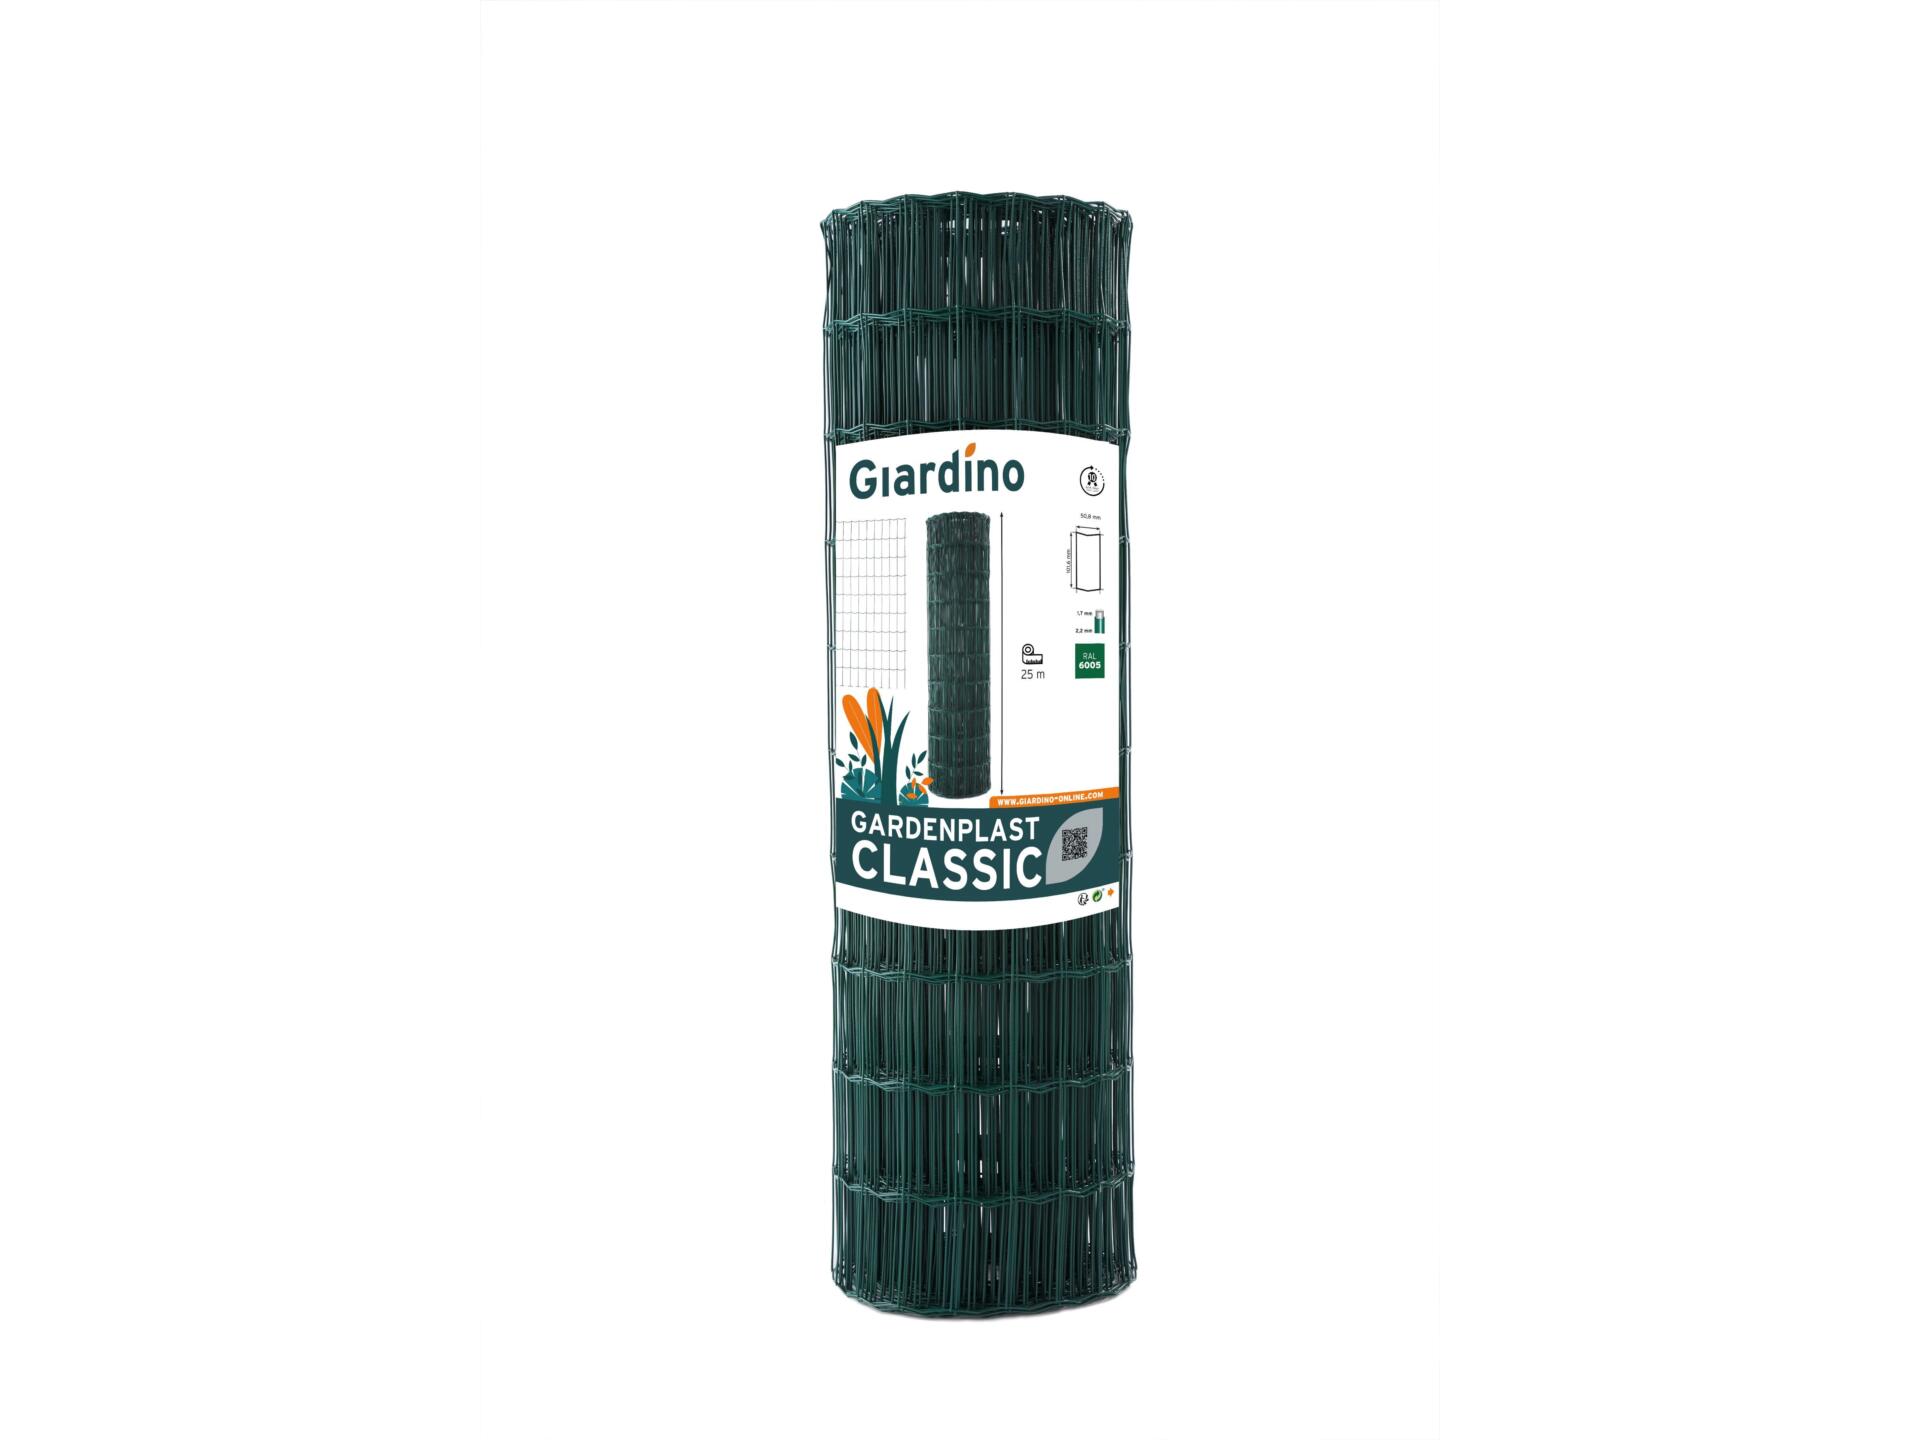 Giardino Gardenplast Classic grillage de jardin 10m x 41cm vert